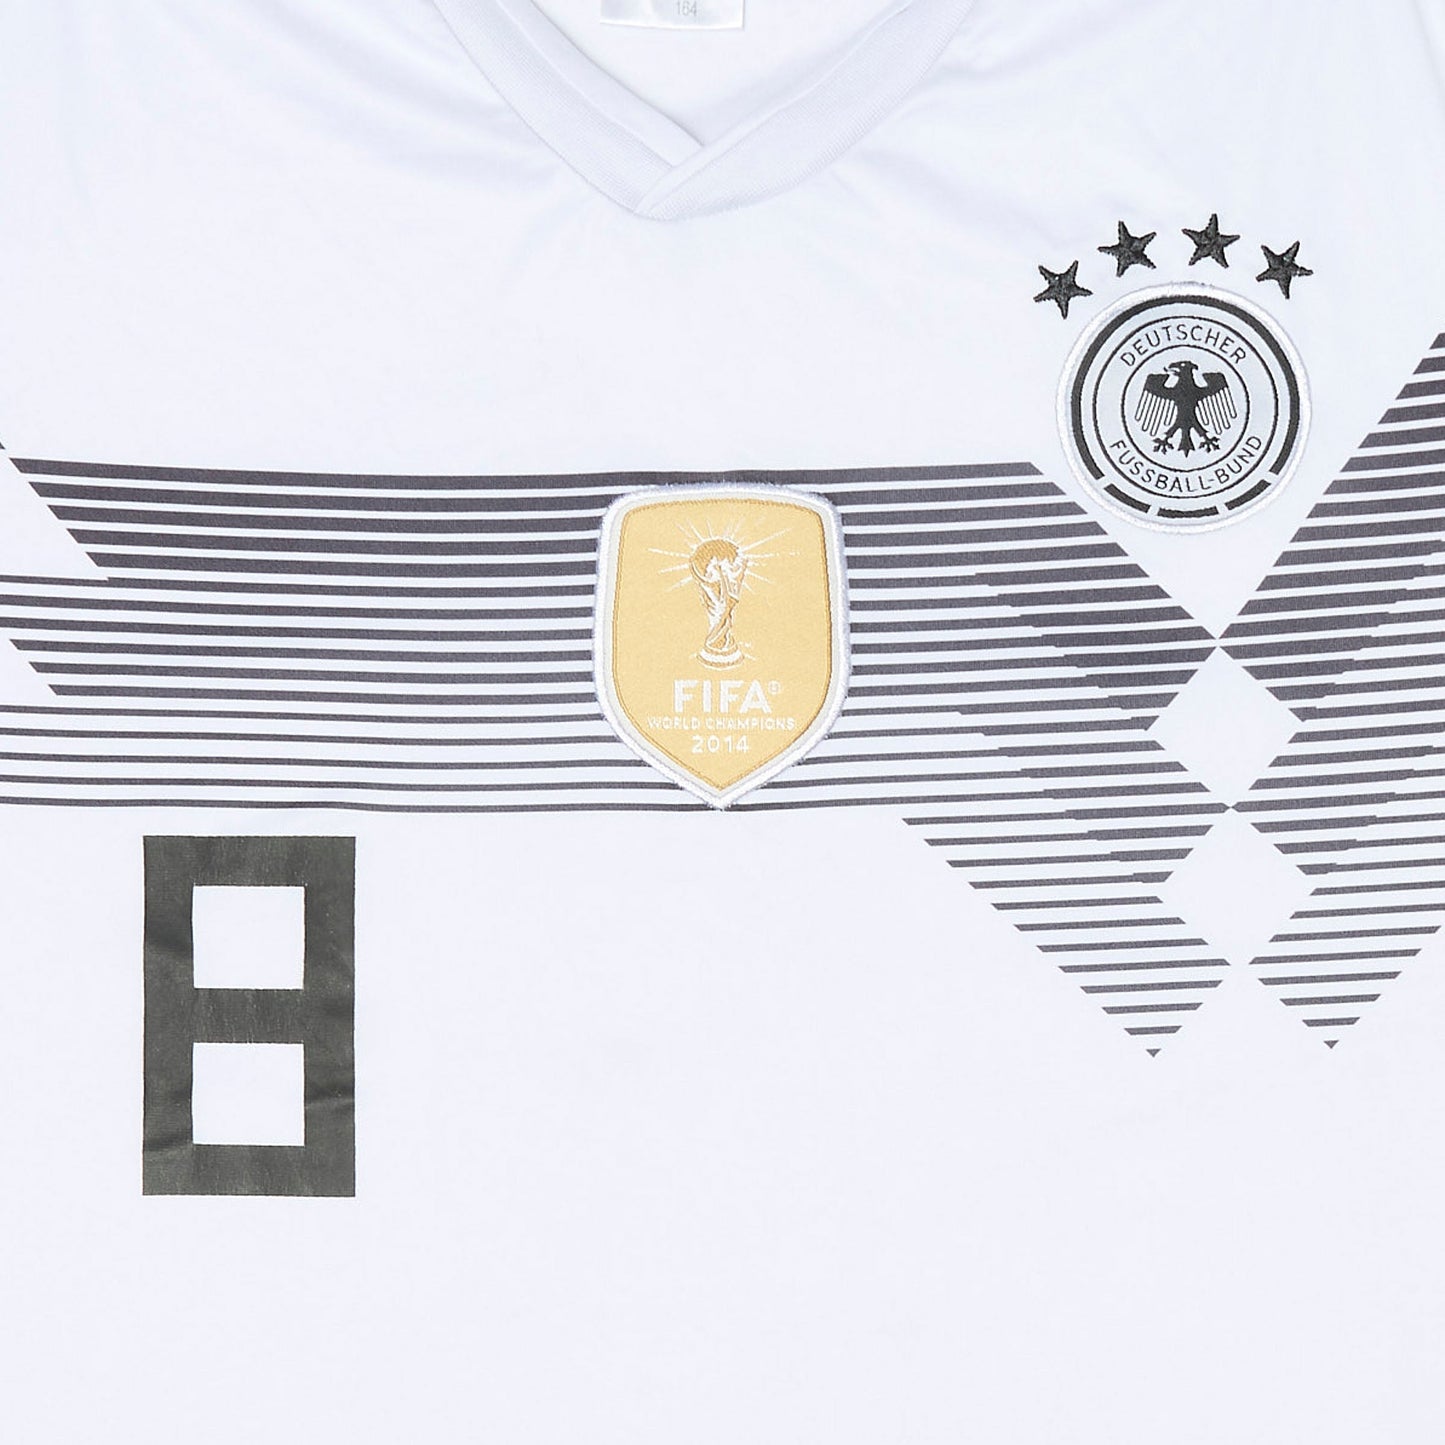 Deutscher Football Shirt - S